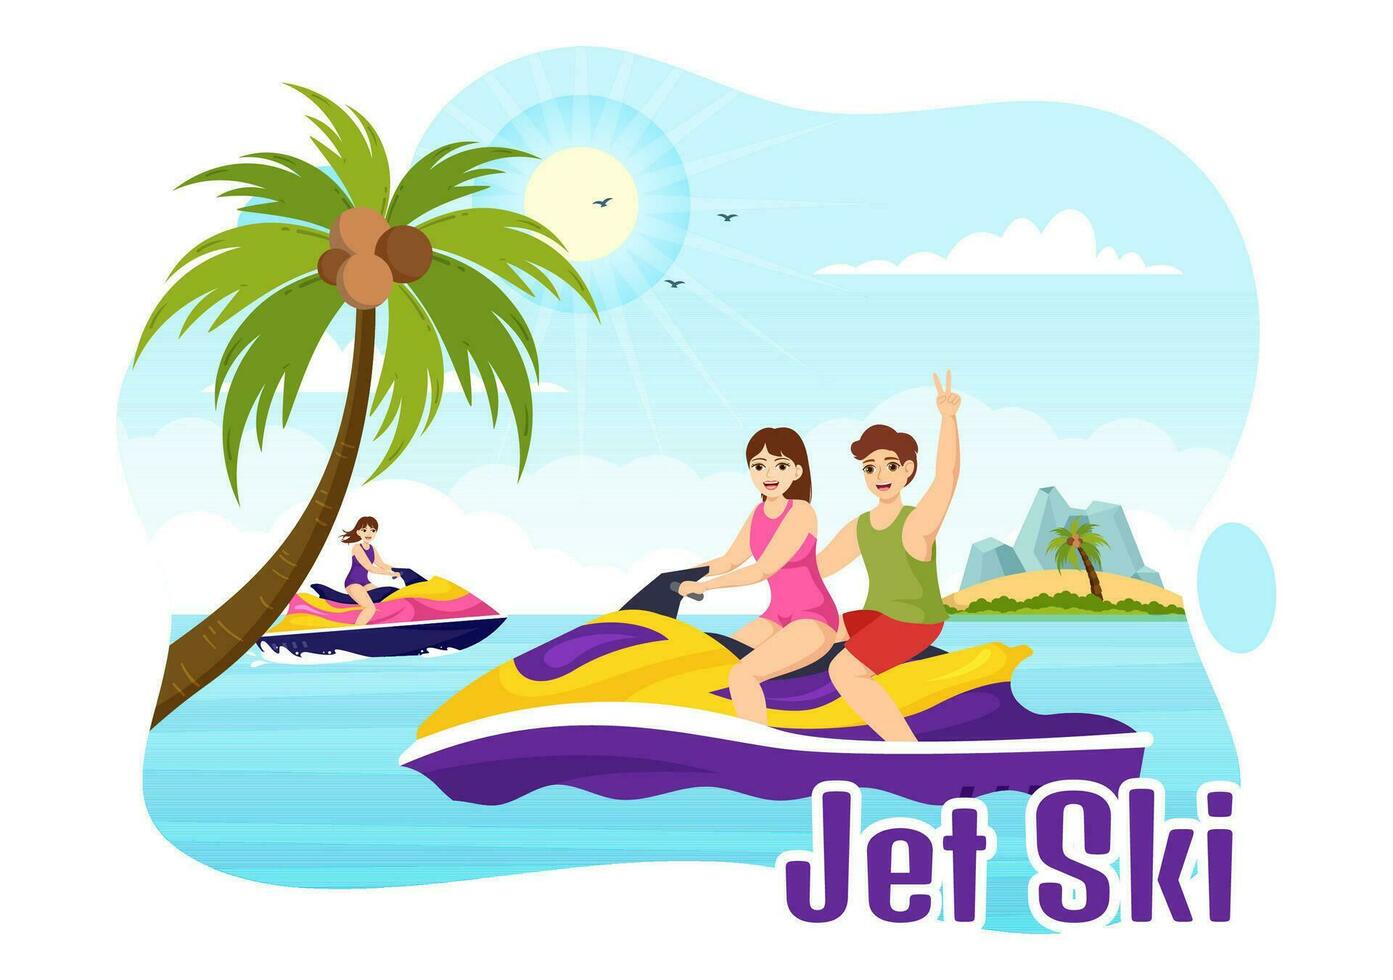 Menschen Reiten Jet Ski Vektor Illustration Sommer- Ferien Erholung, extrem Wasser Sport und Resort Strand Aktivität im Hand gezeichnet eben Karikatur Vorlage